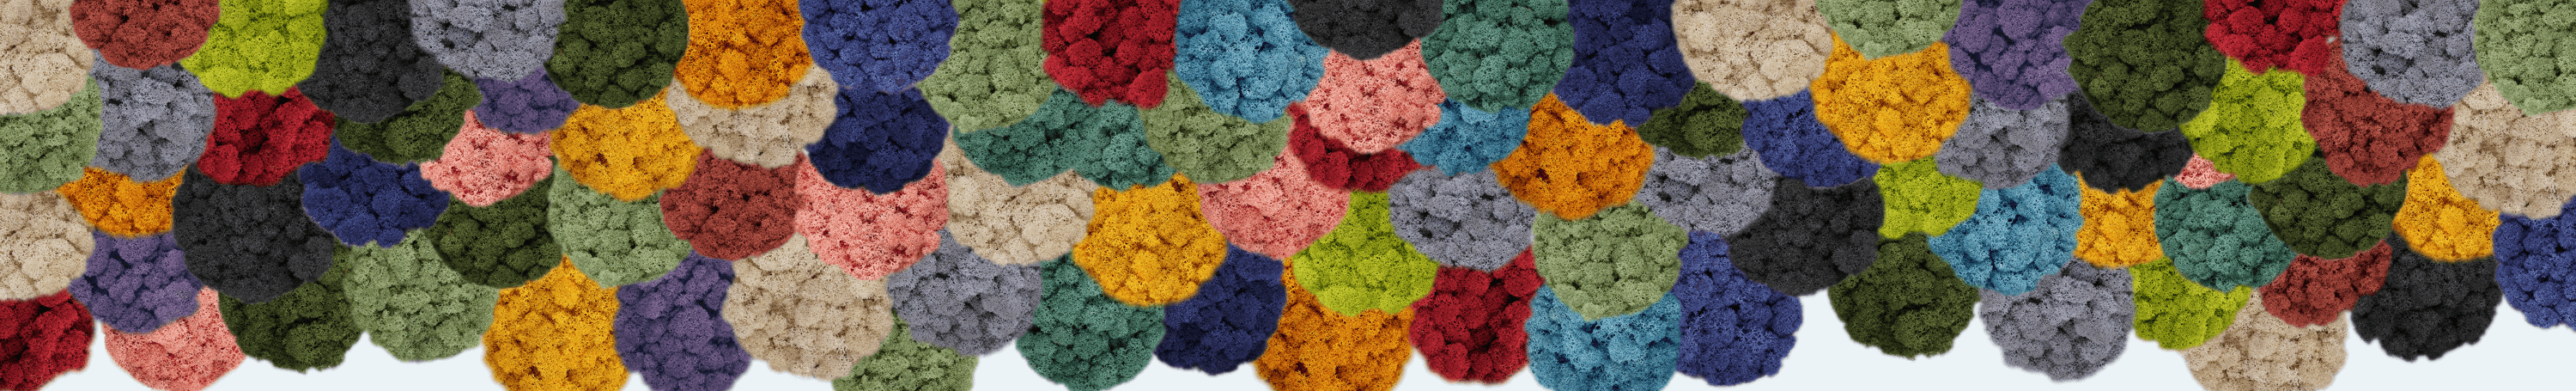 Ligne en lichen stabilisé de nombreuses couleurs différentes.